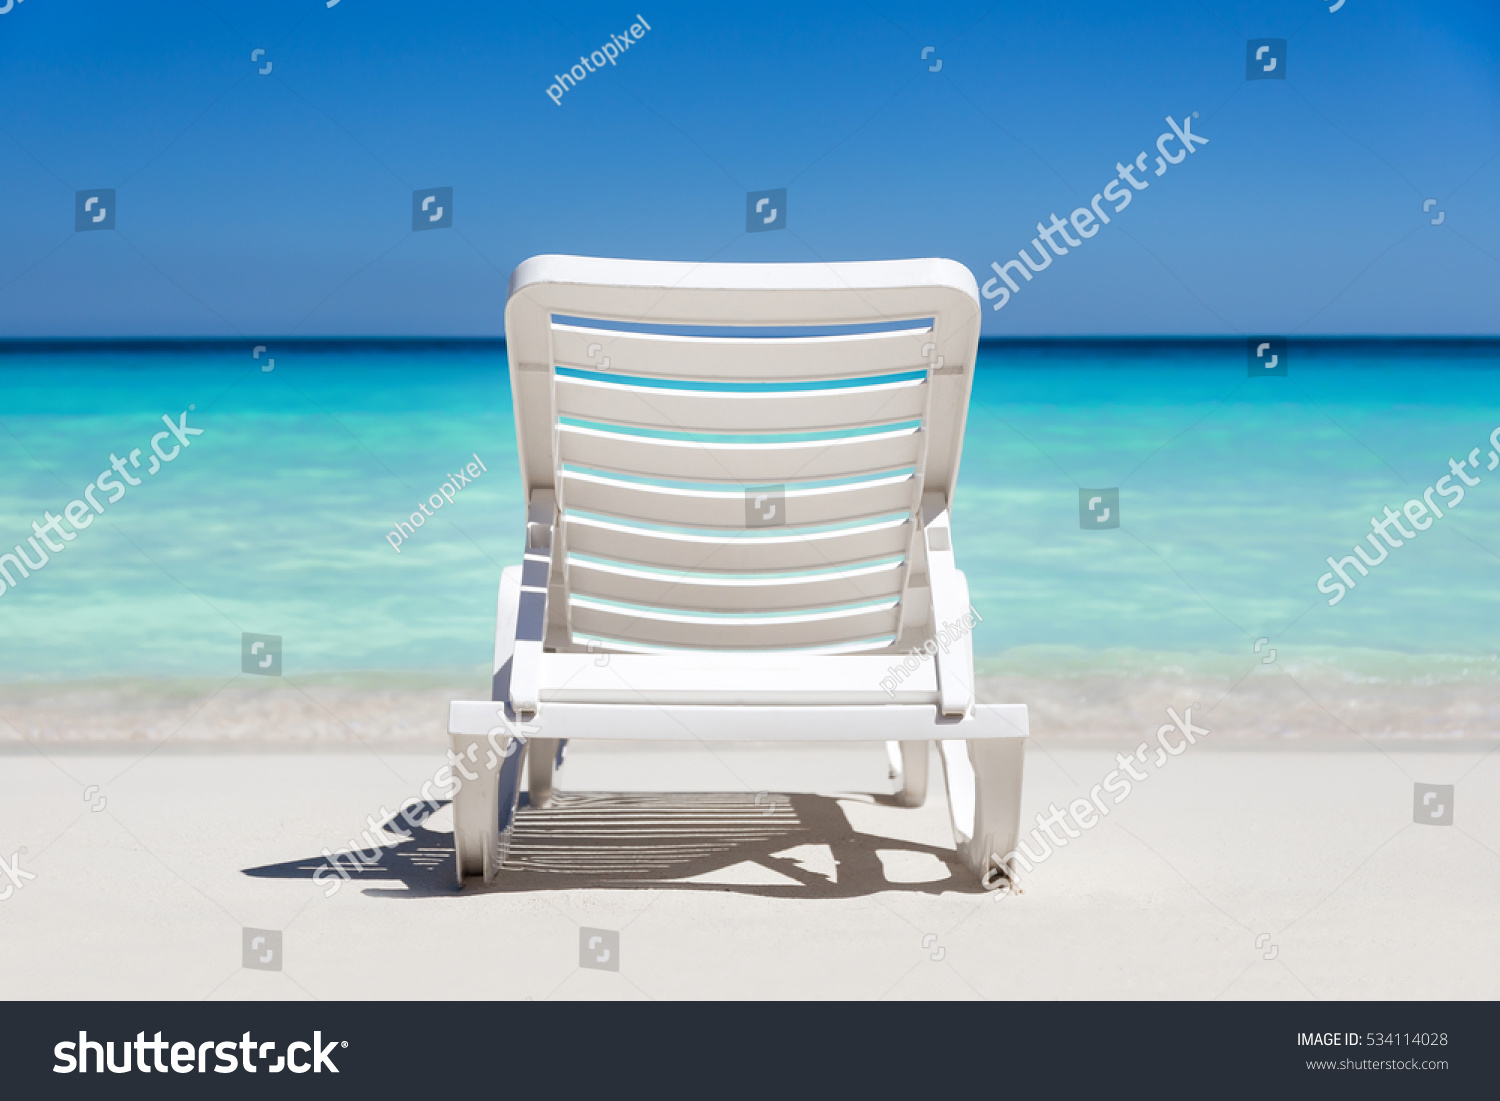 Sunbeds on tropical sandy beach. Vacation on the sea
 #534114028